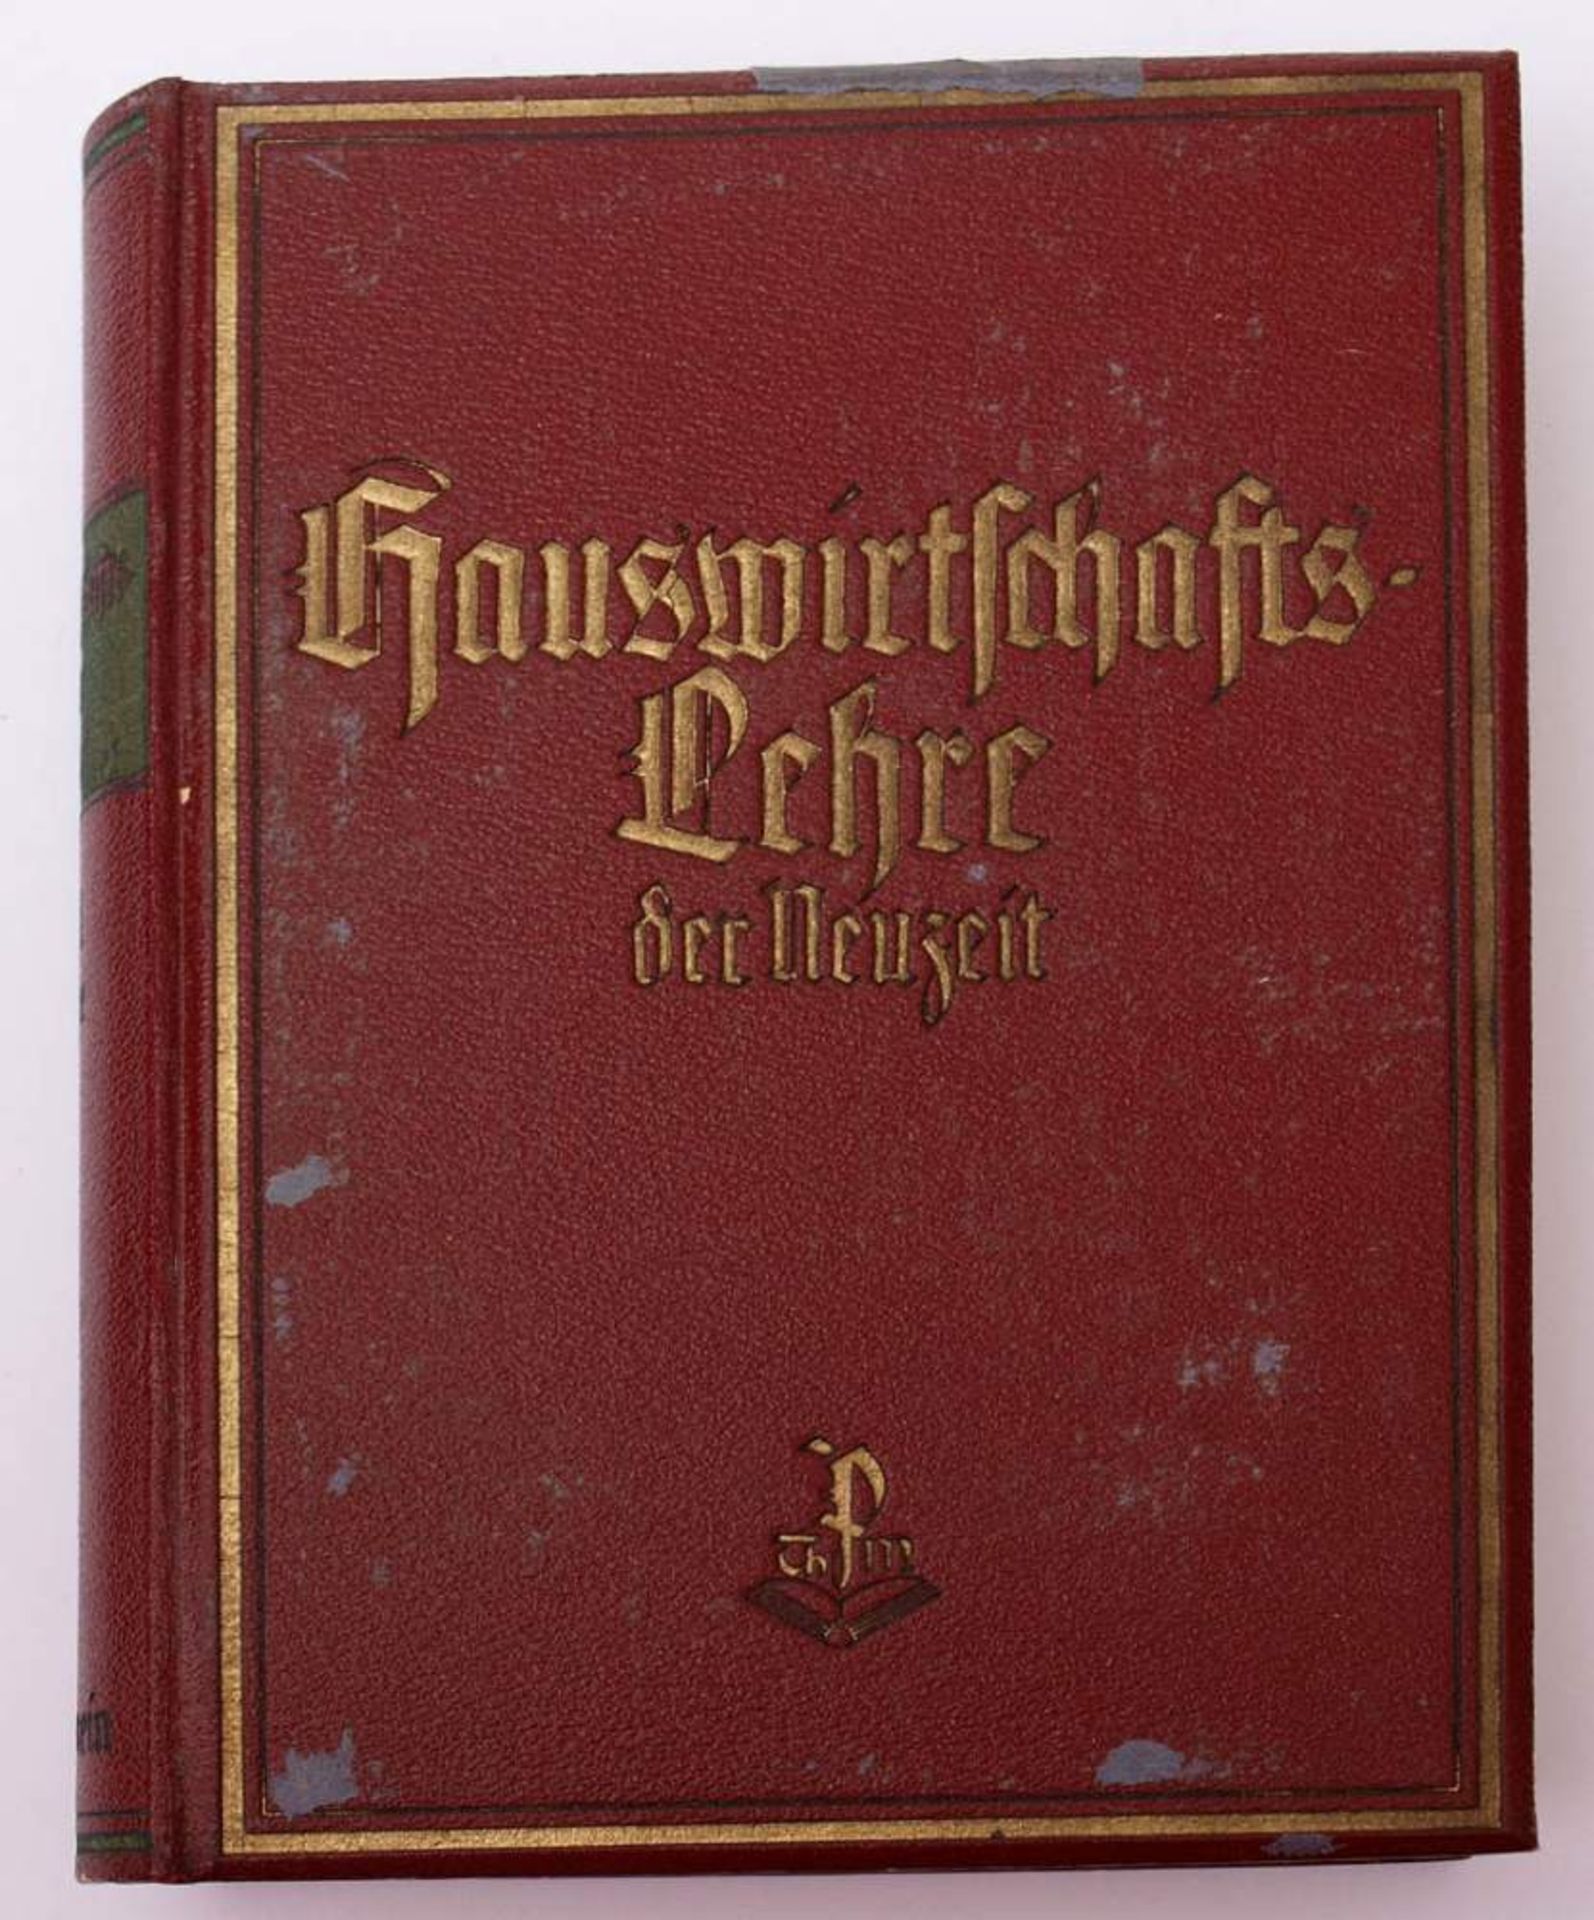 Erlewein, Eugenie: Hauswirtschaftslehre der Neuzeit3 Bde., W. Peter, München. Reich illustriert. - Bild 3 aus 5